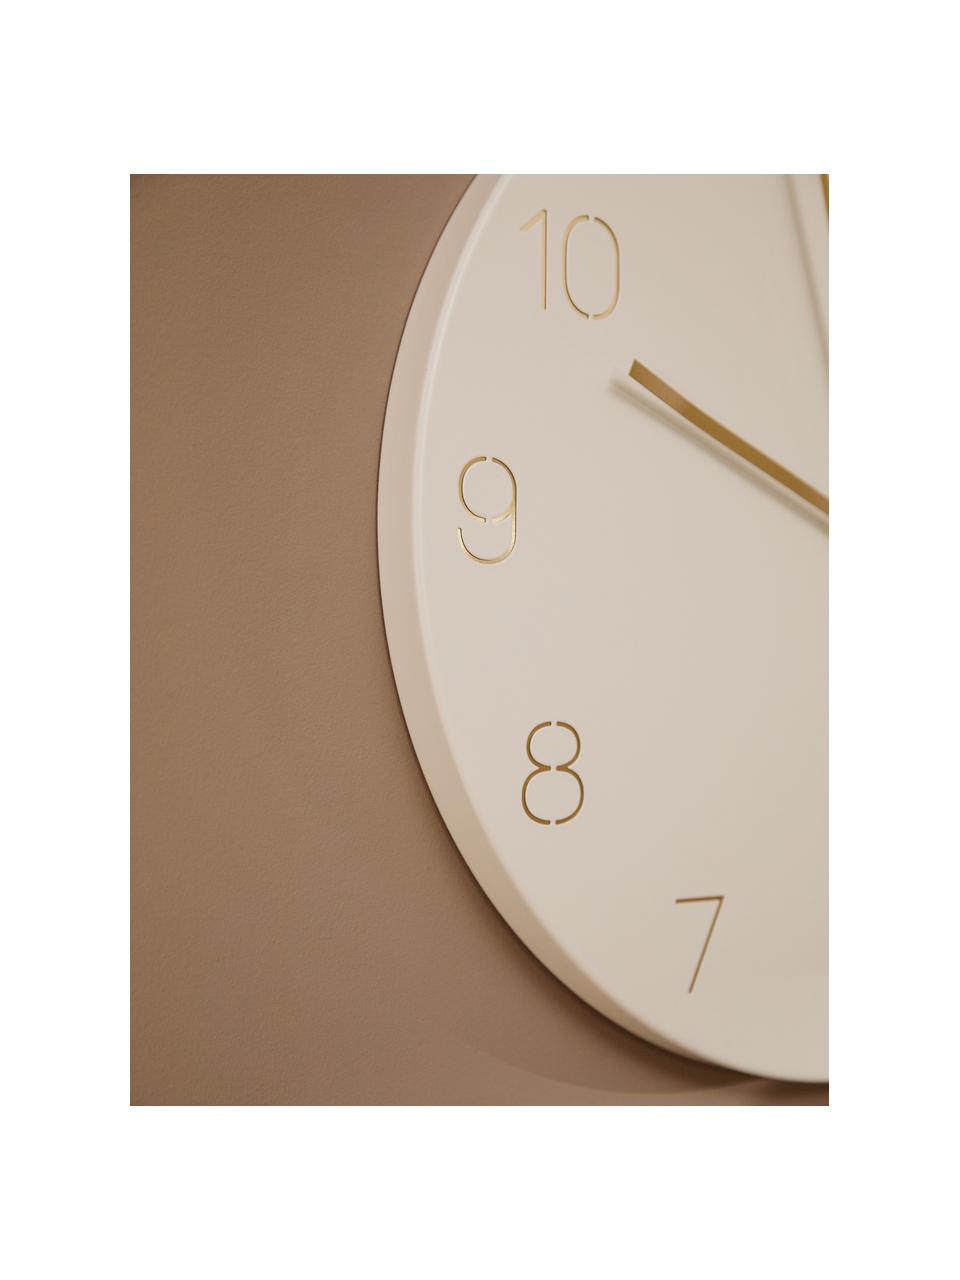 Nástěnné hodiny Charm, Potažený kov, Bílá, Ø 40 cm